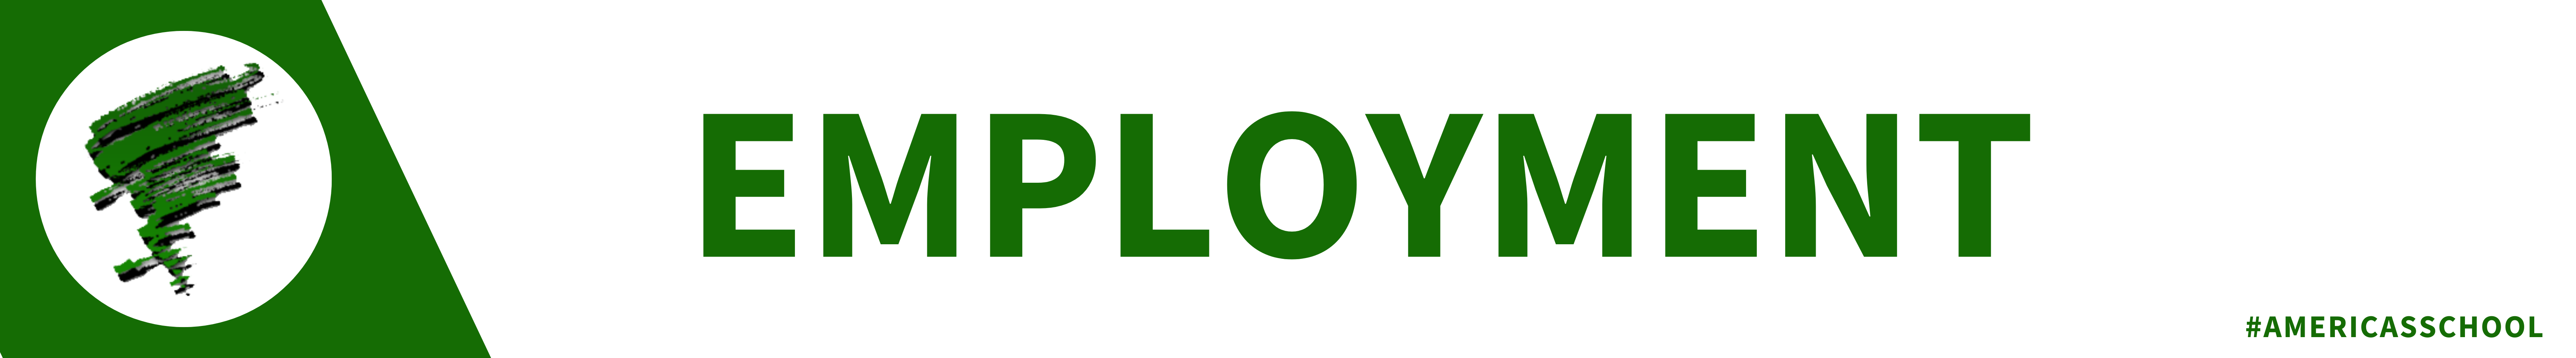 employment banner